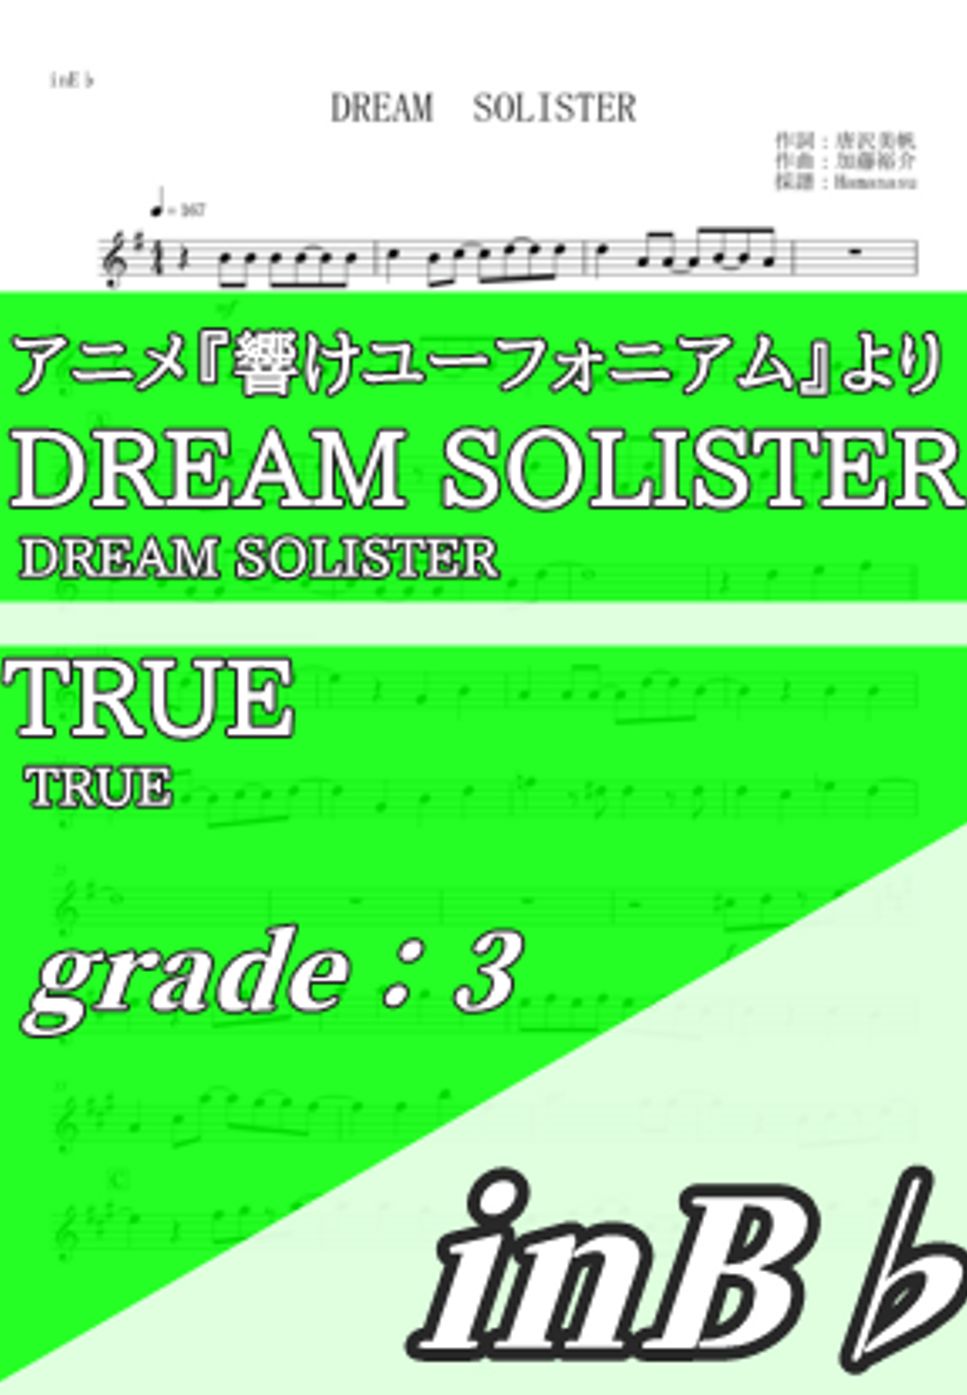 TRUE - DREAM SOLISTER (inB♭) by Hamanasu